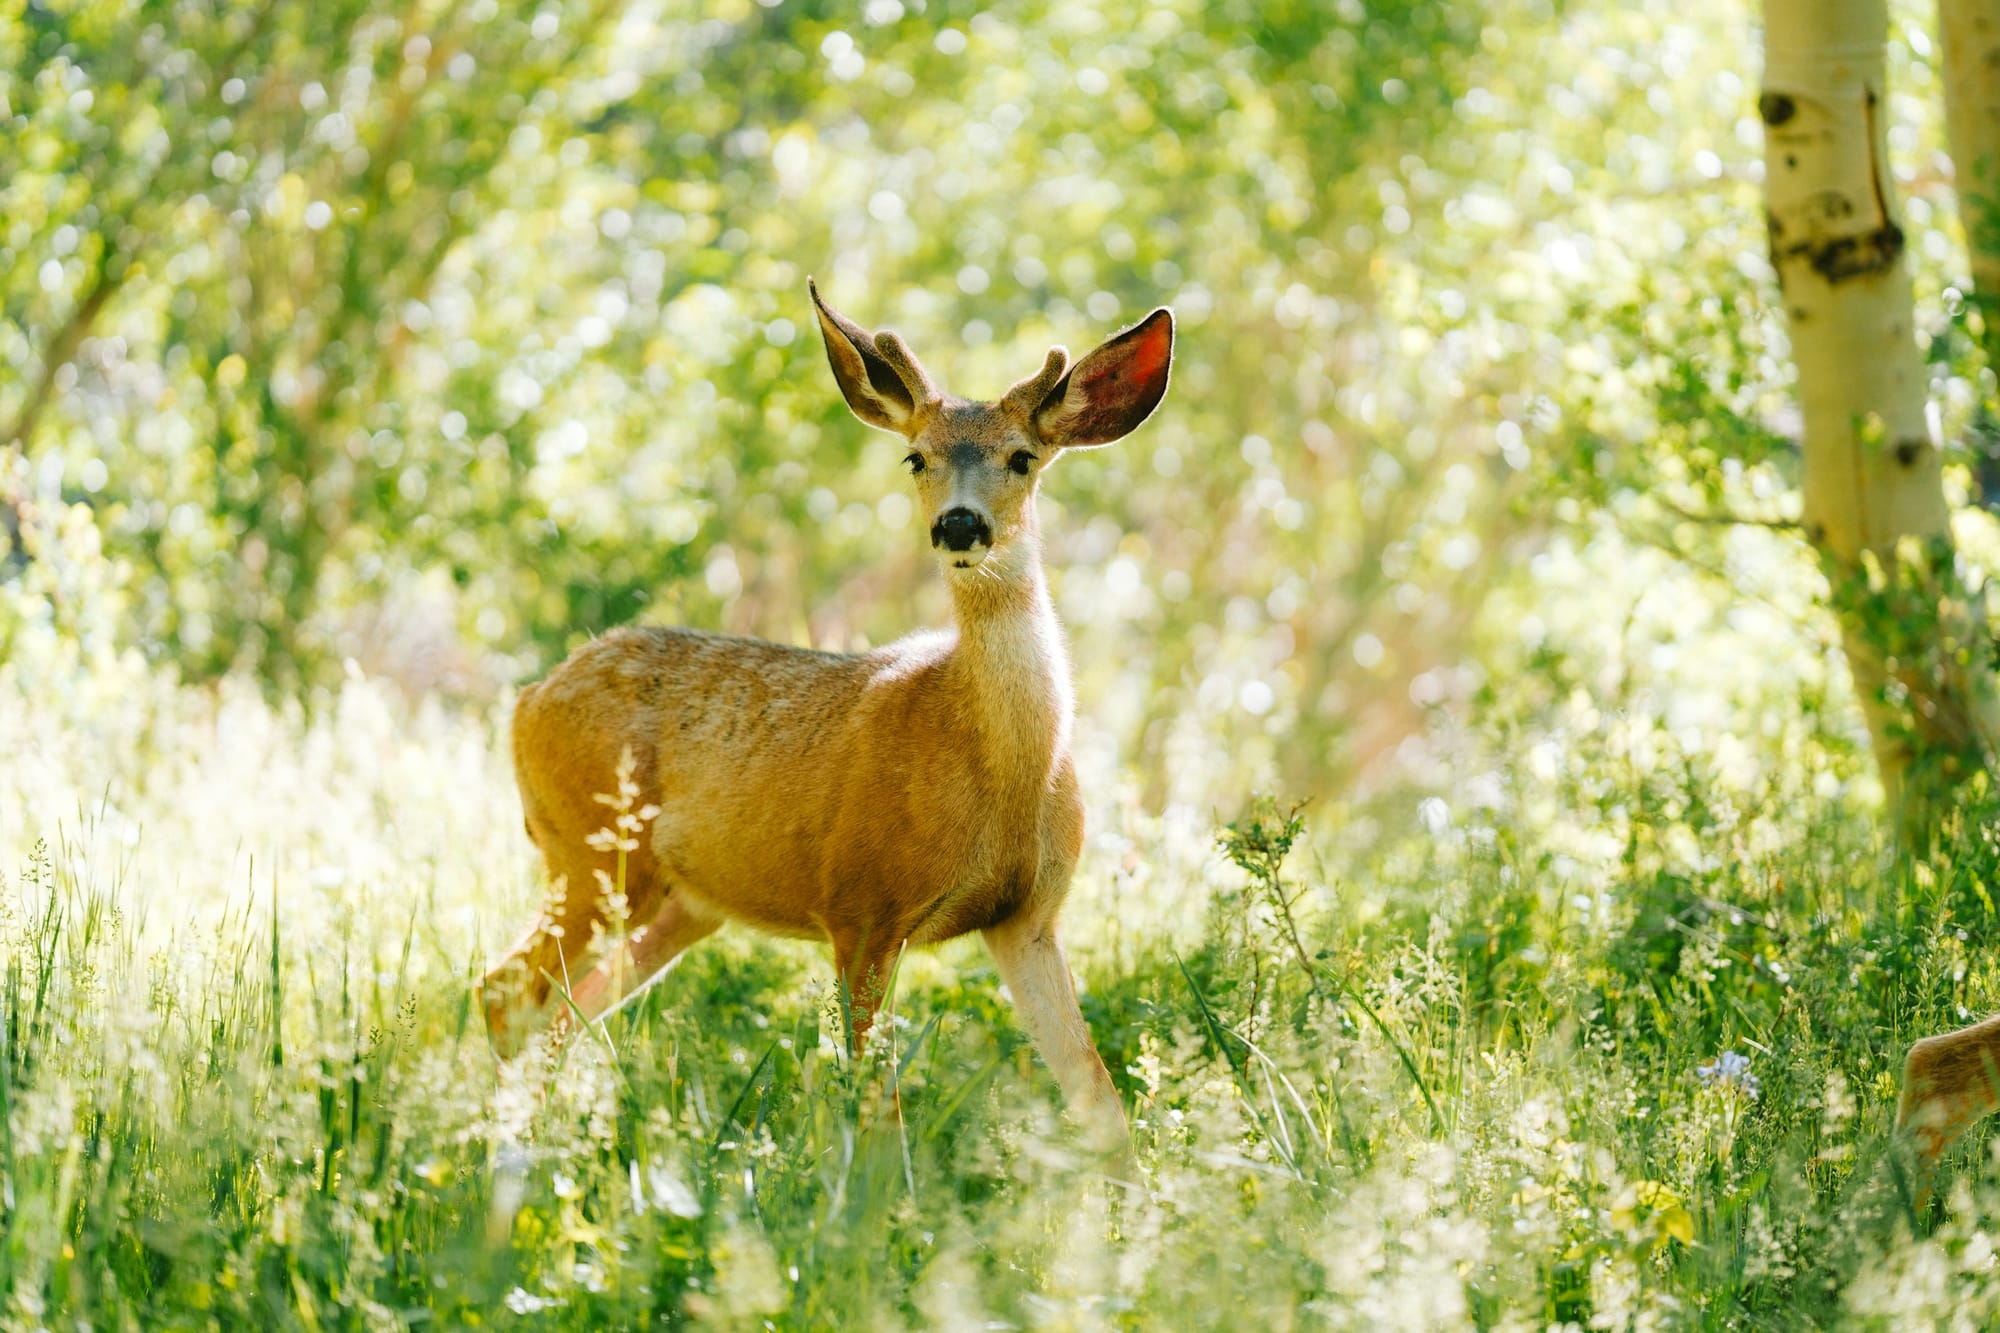 Deer looking surprised in a wooded area